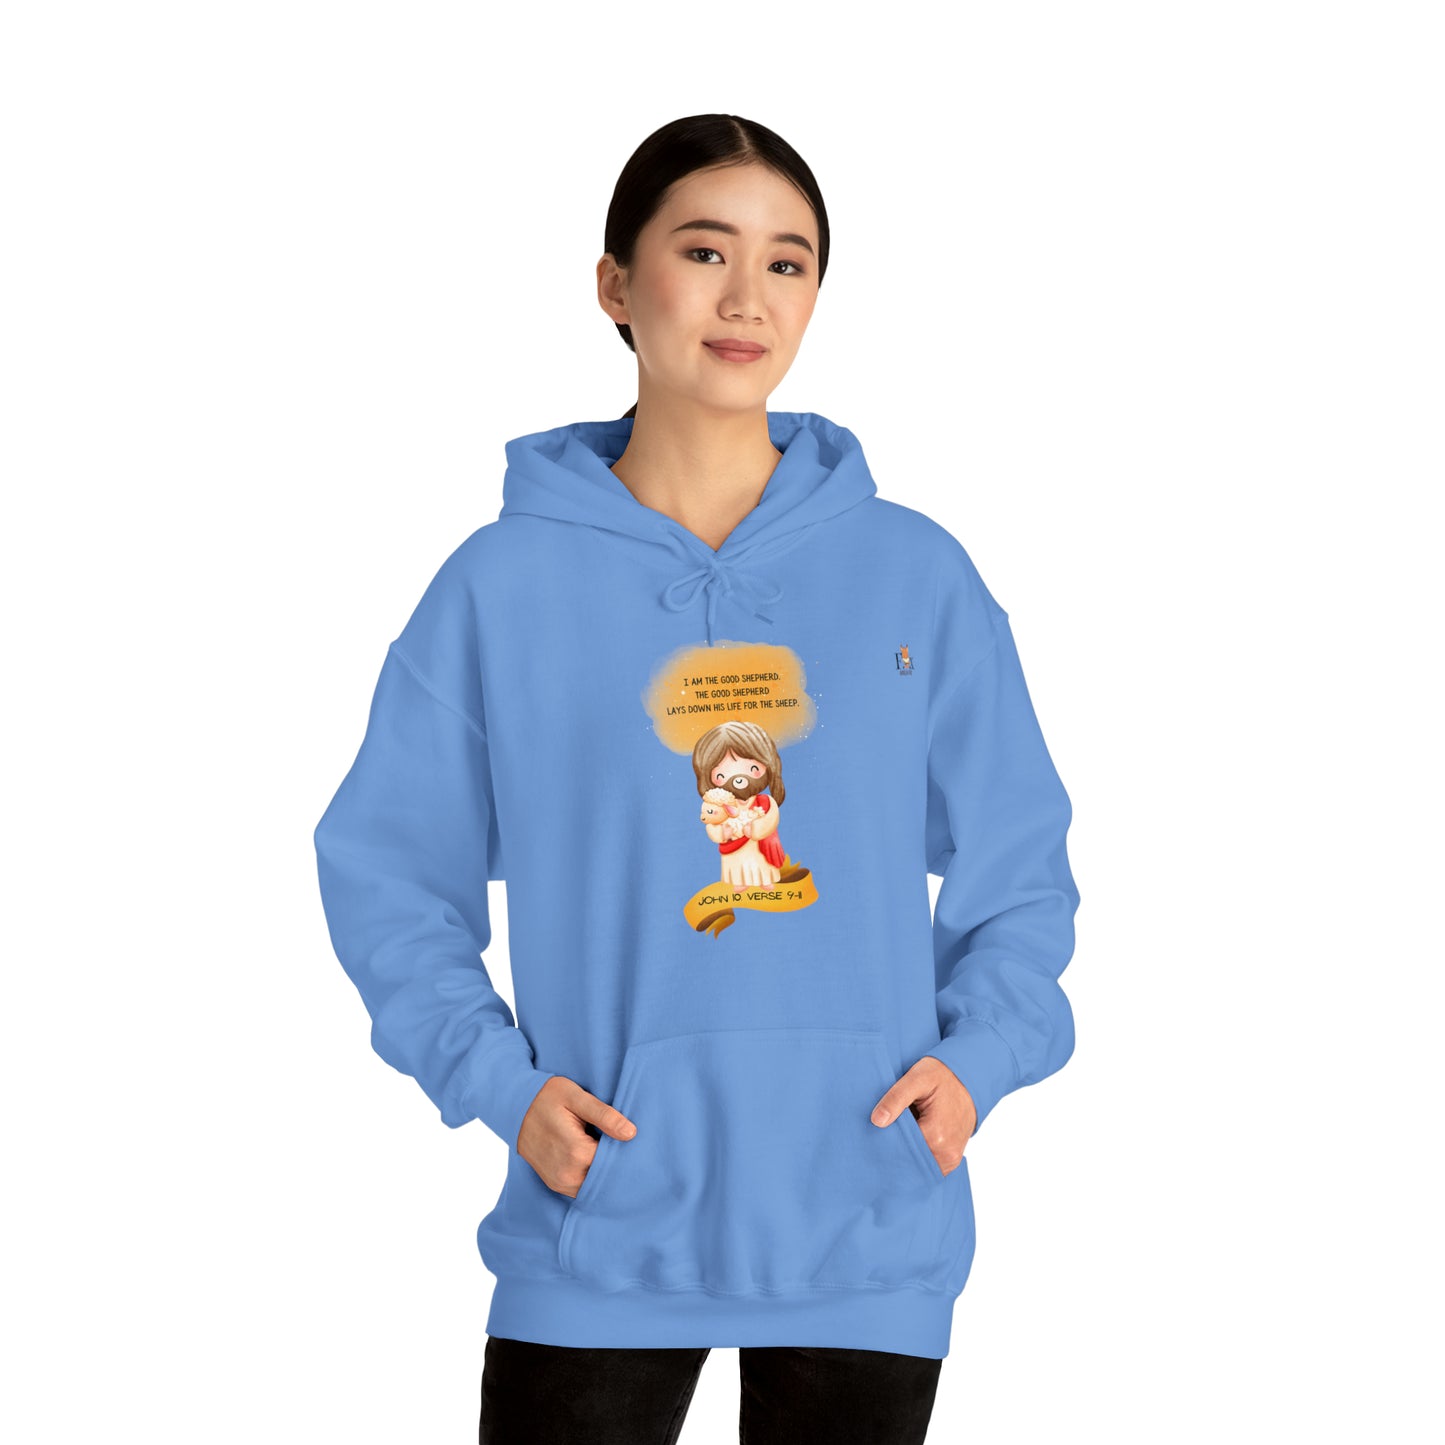 I am The Good Shepherd- Unisex Hooded Sweatshirt